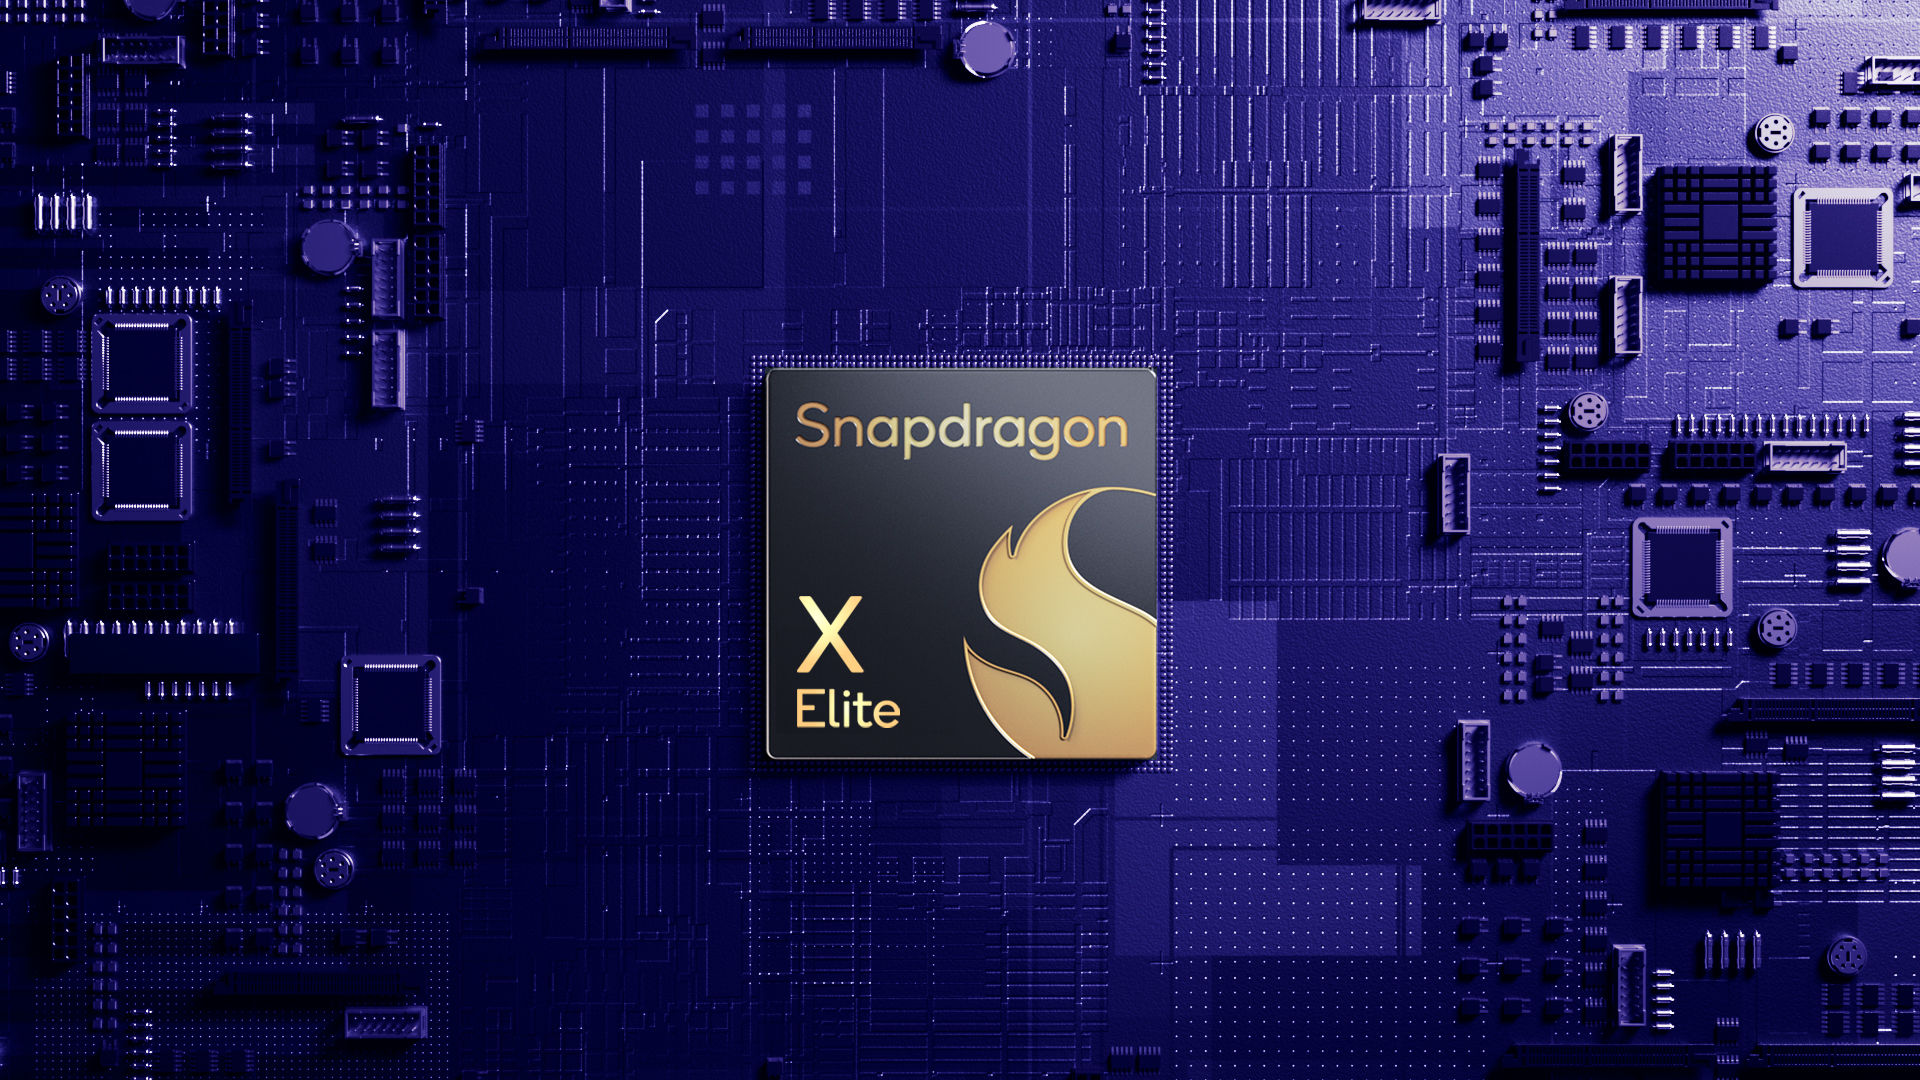 Snapdragon X Elite visar en prestandaförbättring på 49%